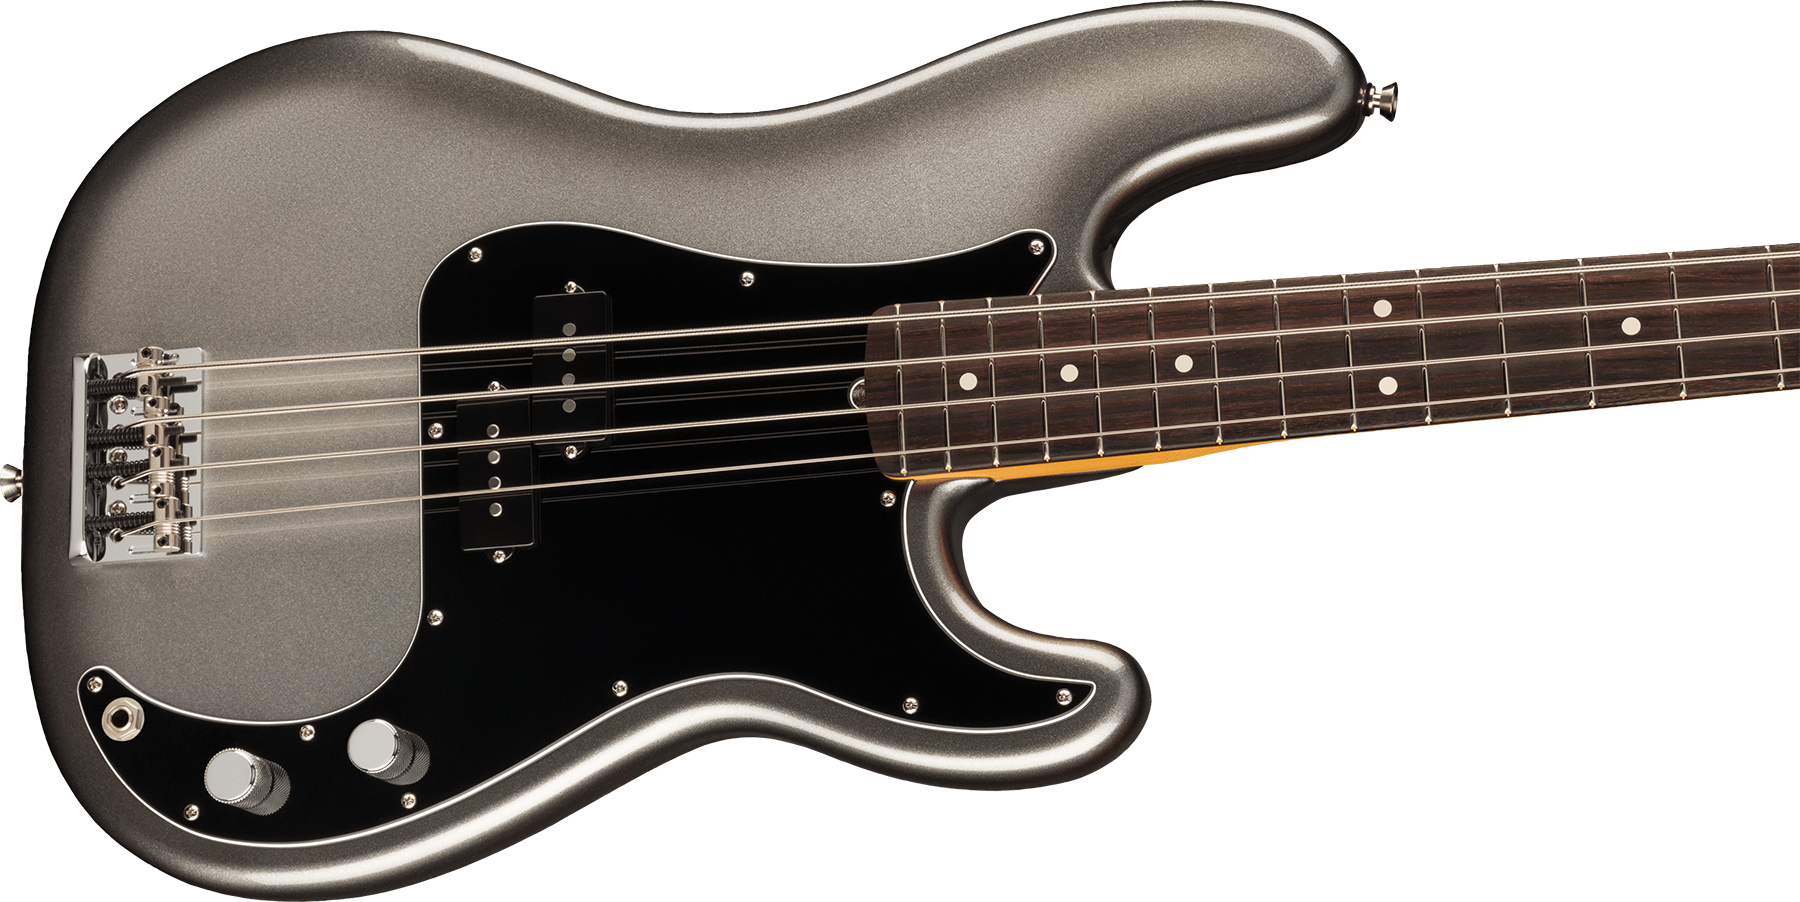 Fender Precision Bass American Professional Ii Usa Rw - Mercury - Bajo eléctrico de cuerpo sólido - Variation 2